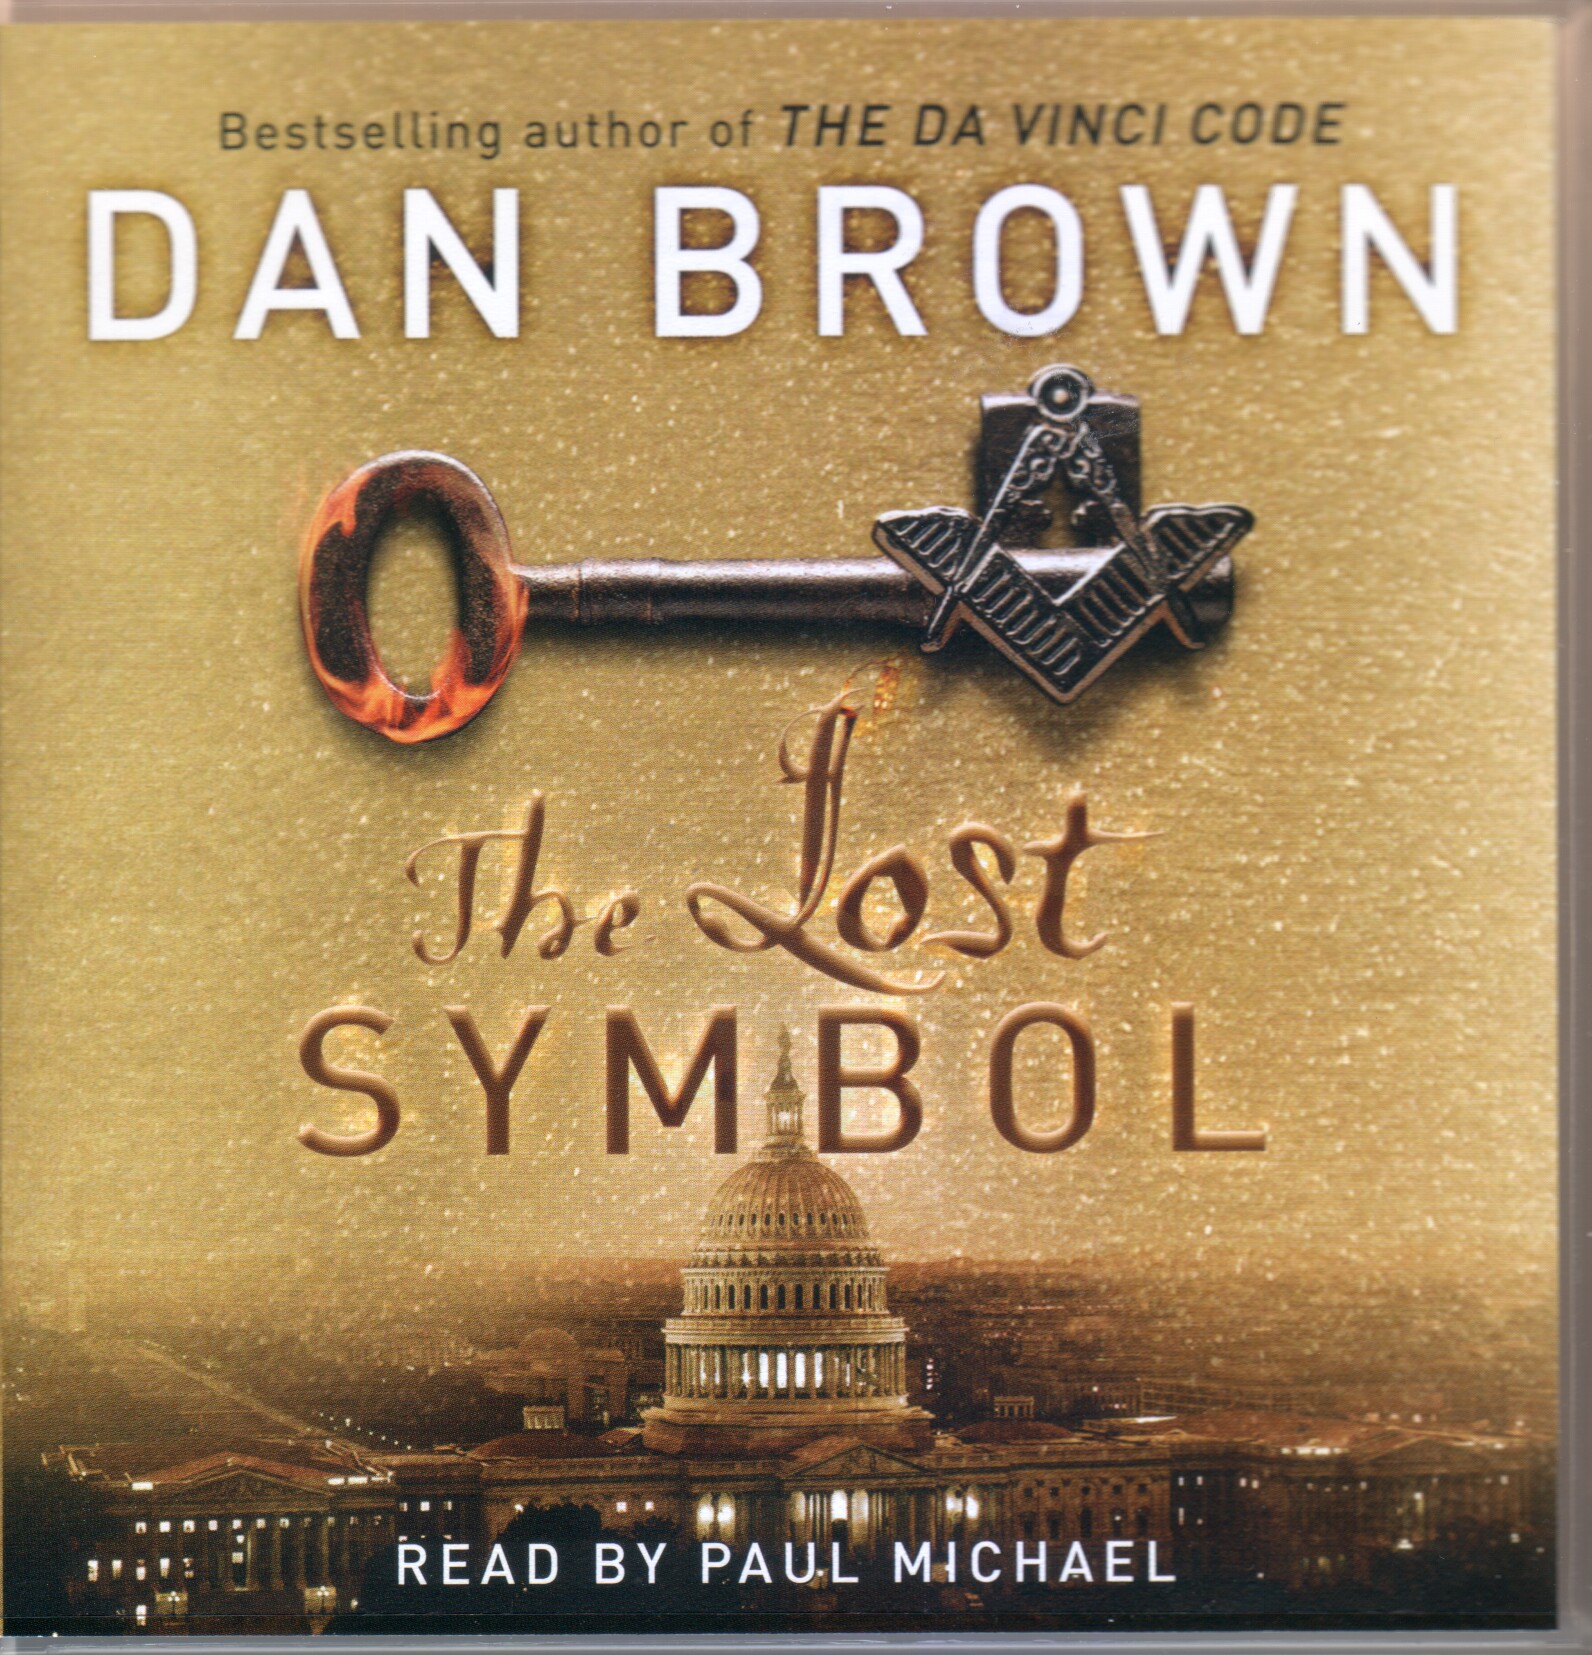 Dan Brown Lost Symbol Audiobook Free Download